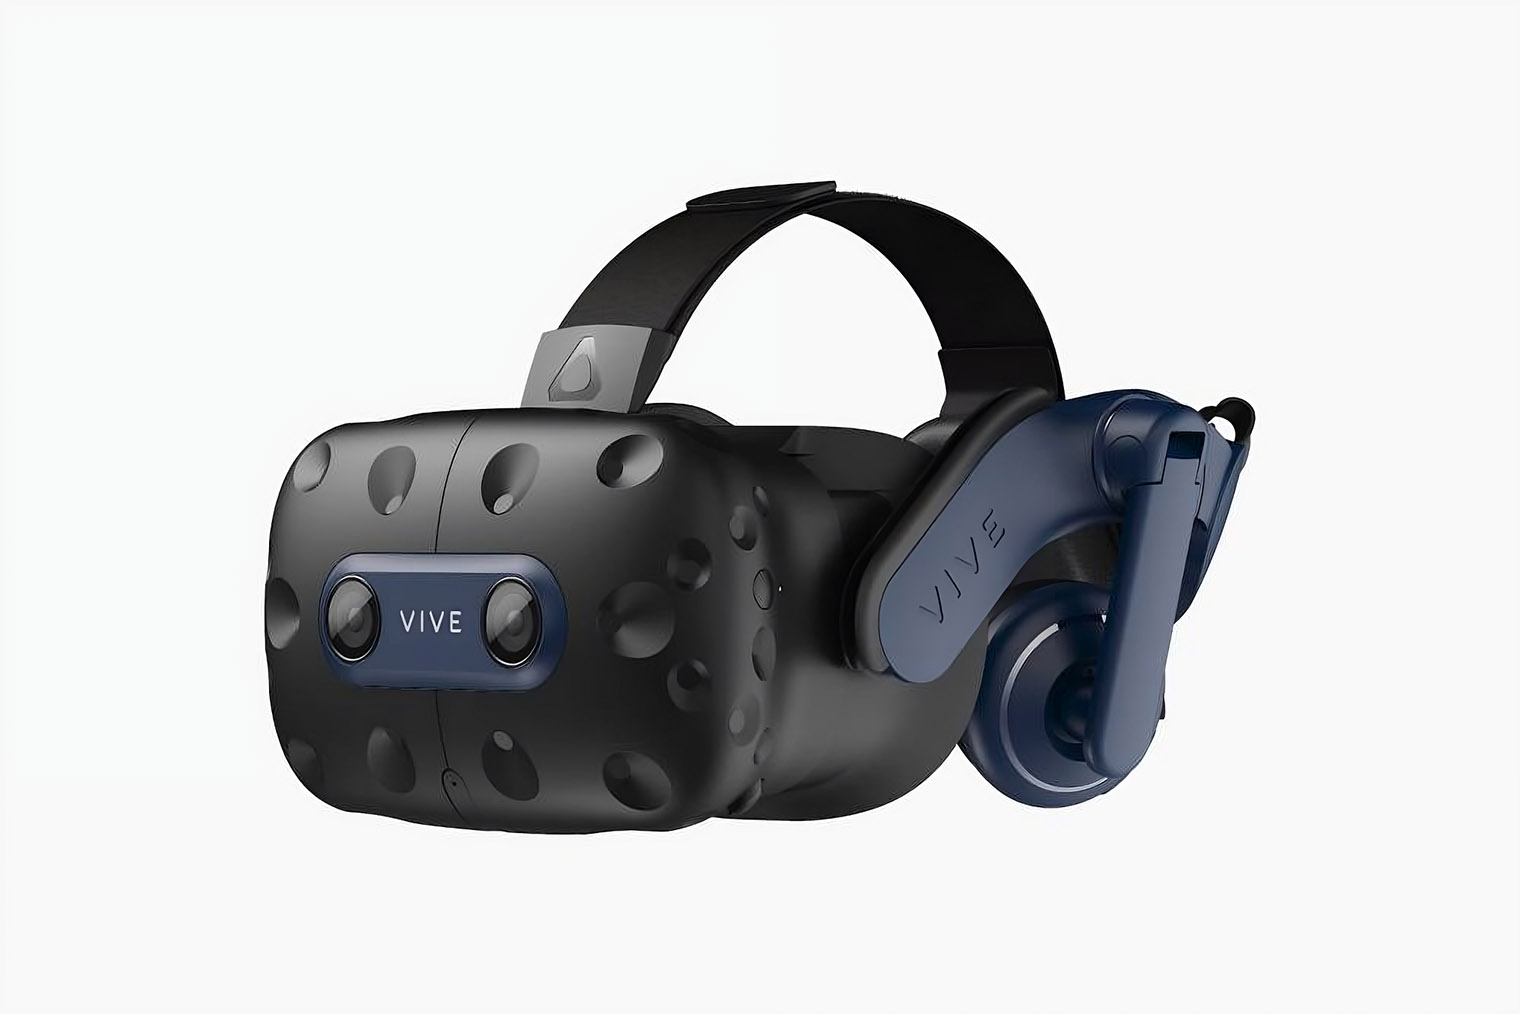 HTC Vive Pro 2 имеет один из лучших дисплеев среди VR⁠-⁠устройств — 2448 × 2448 точек на каждый глаз. Пиксели практически неразличимы, а объекты в ААА⁠-⁠хитах можно рассматривать в деталях. Стоимость на «Яндекс-маркете» — от 147 900 ₽ за полный комплект с базовыми станциями